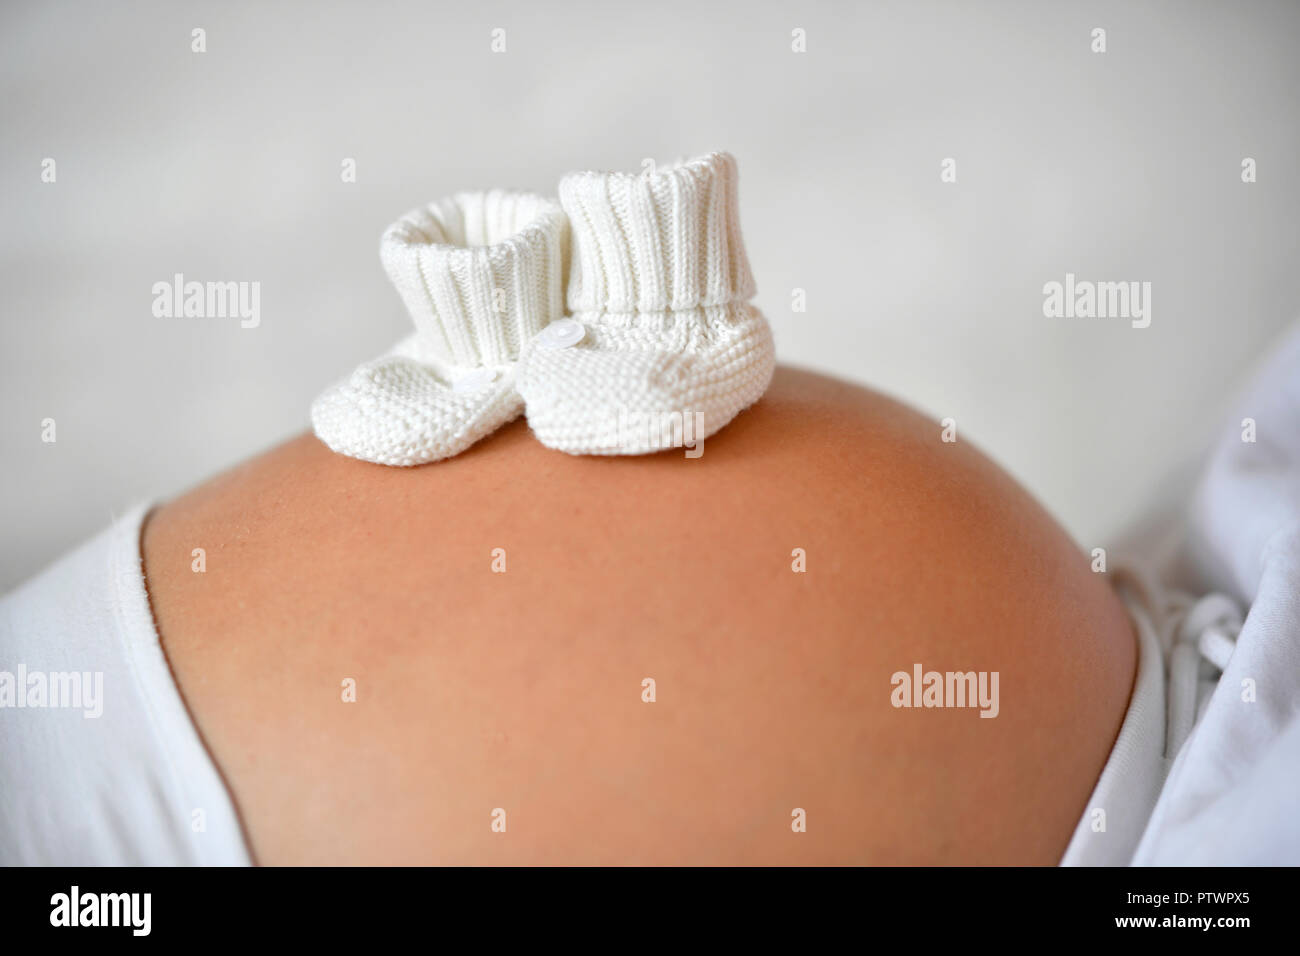 Femme au neuvième mois de grossesse, bébé, sur le ventre, Allemagne Banque D'Images